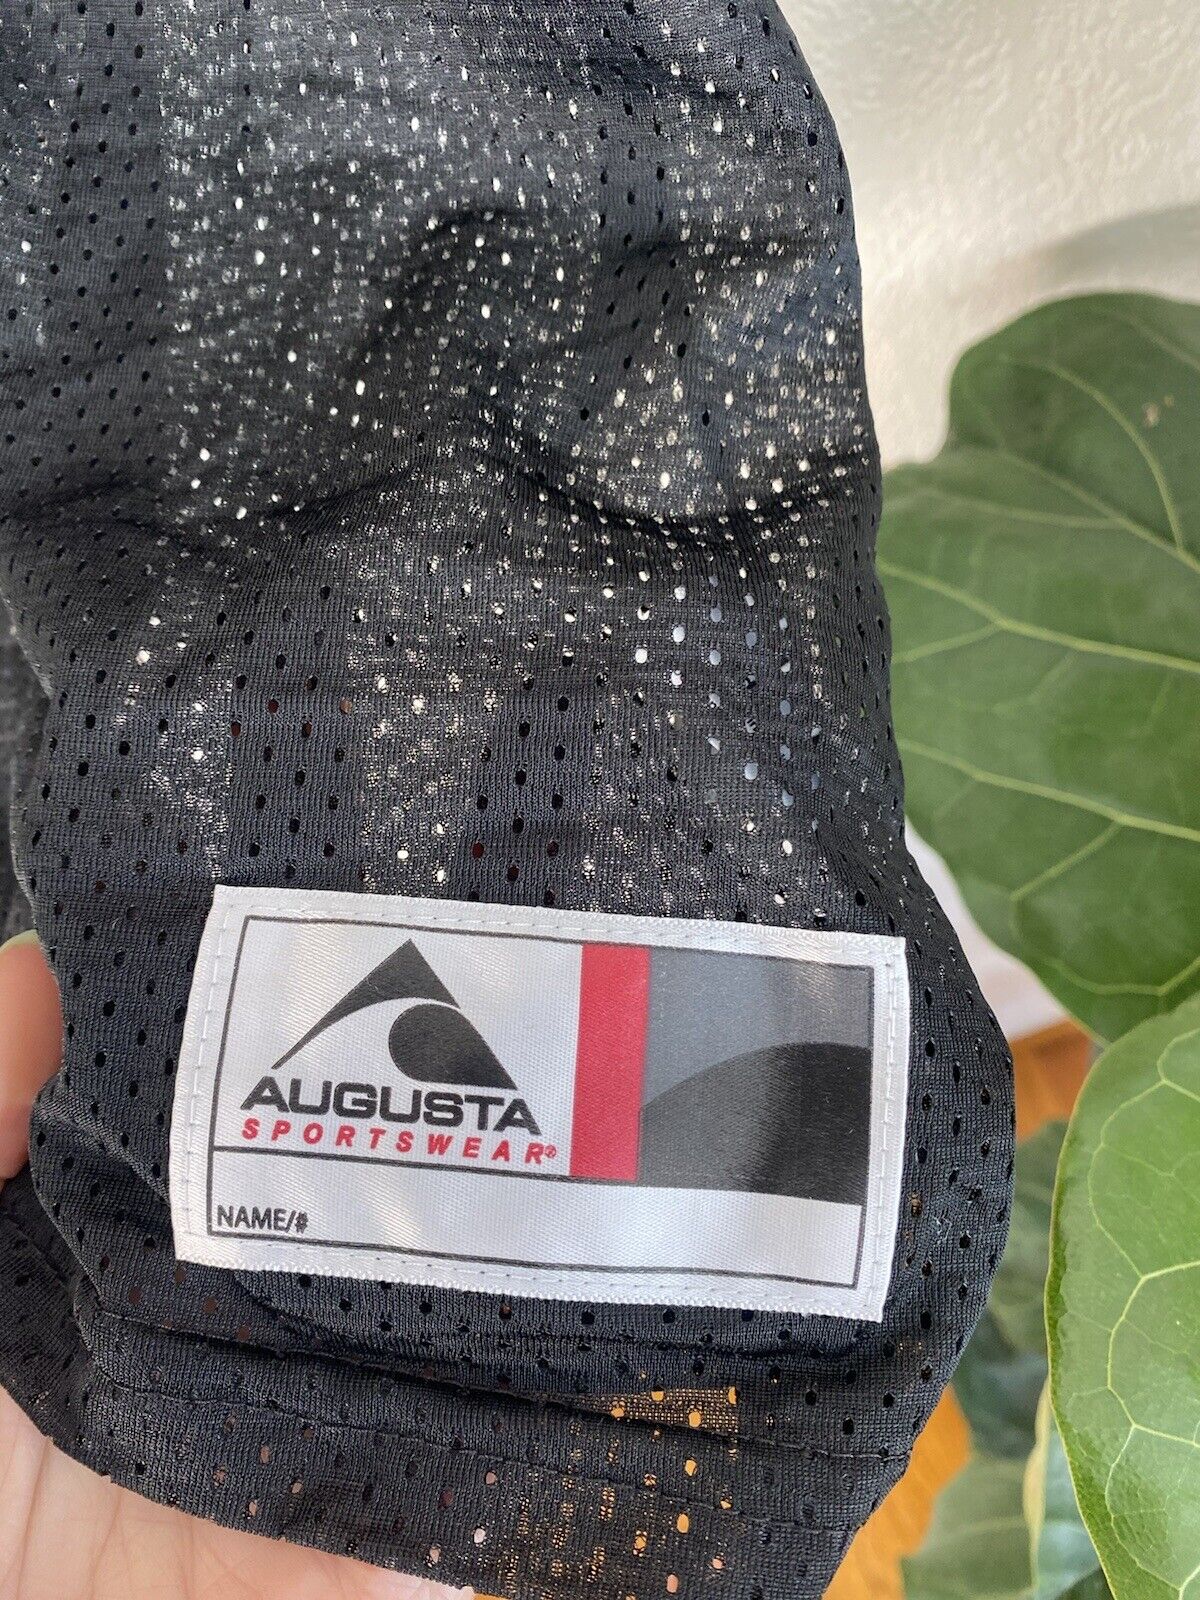 Black Jersey - Augusta Sportswear - Adult Large